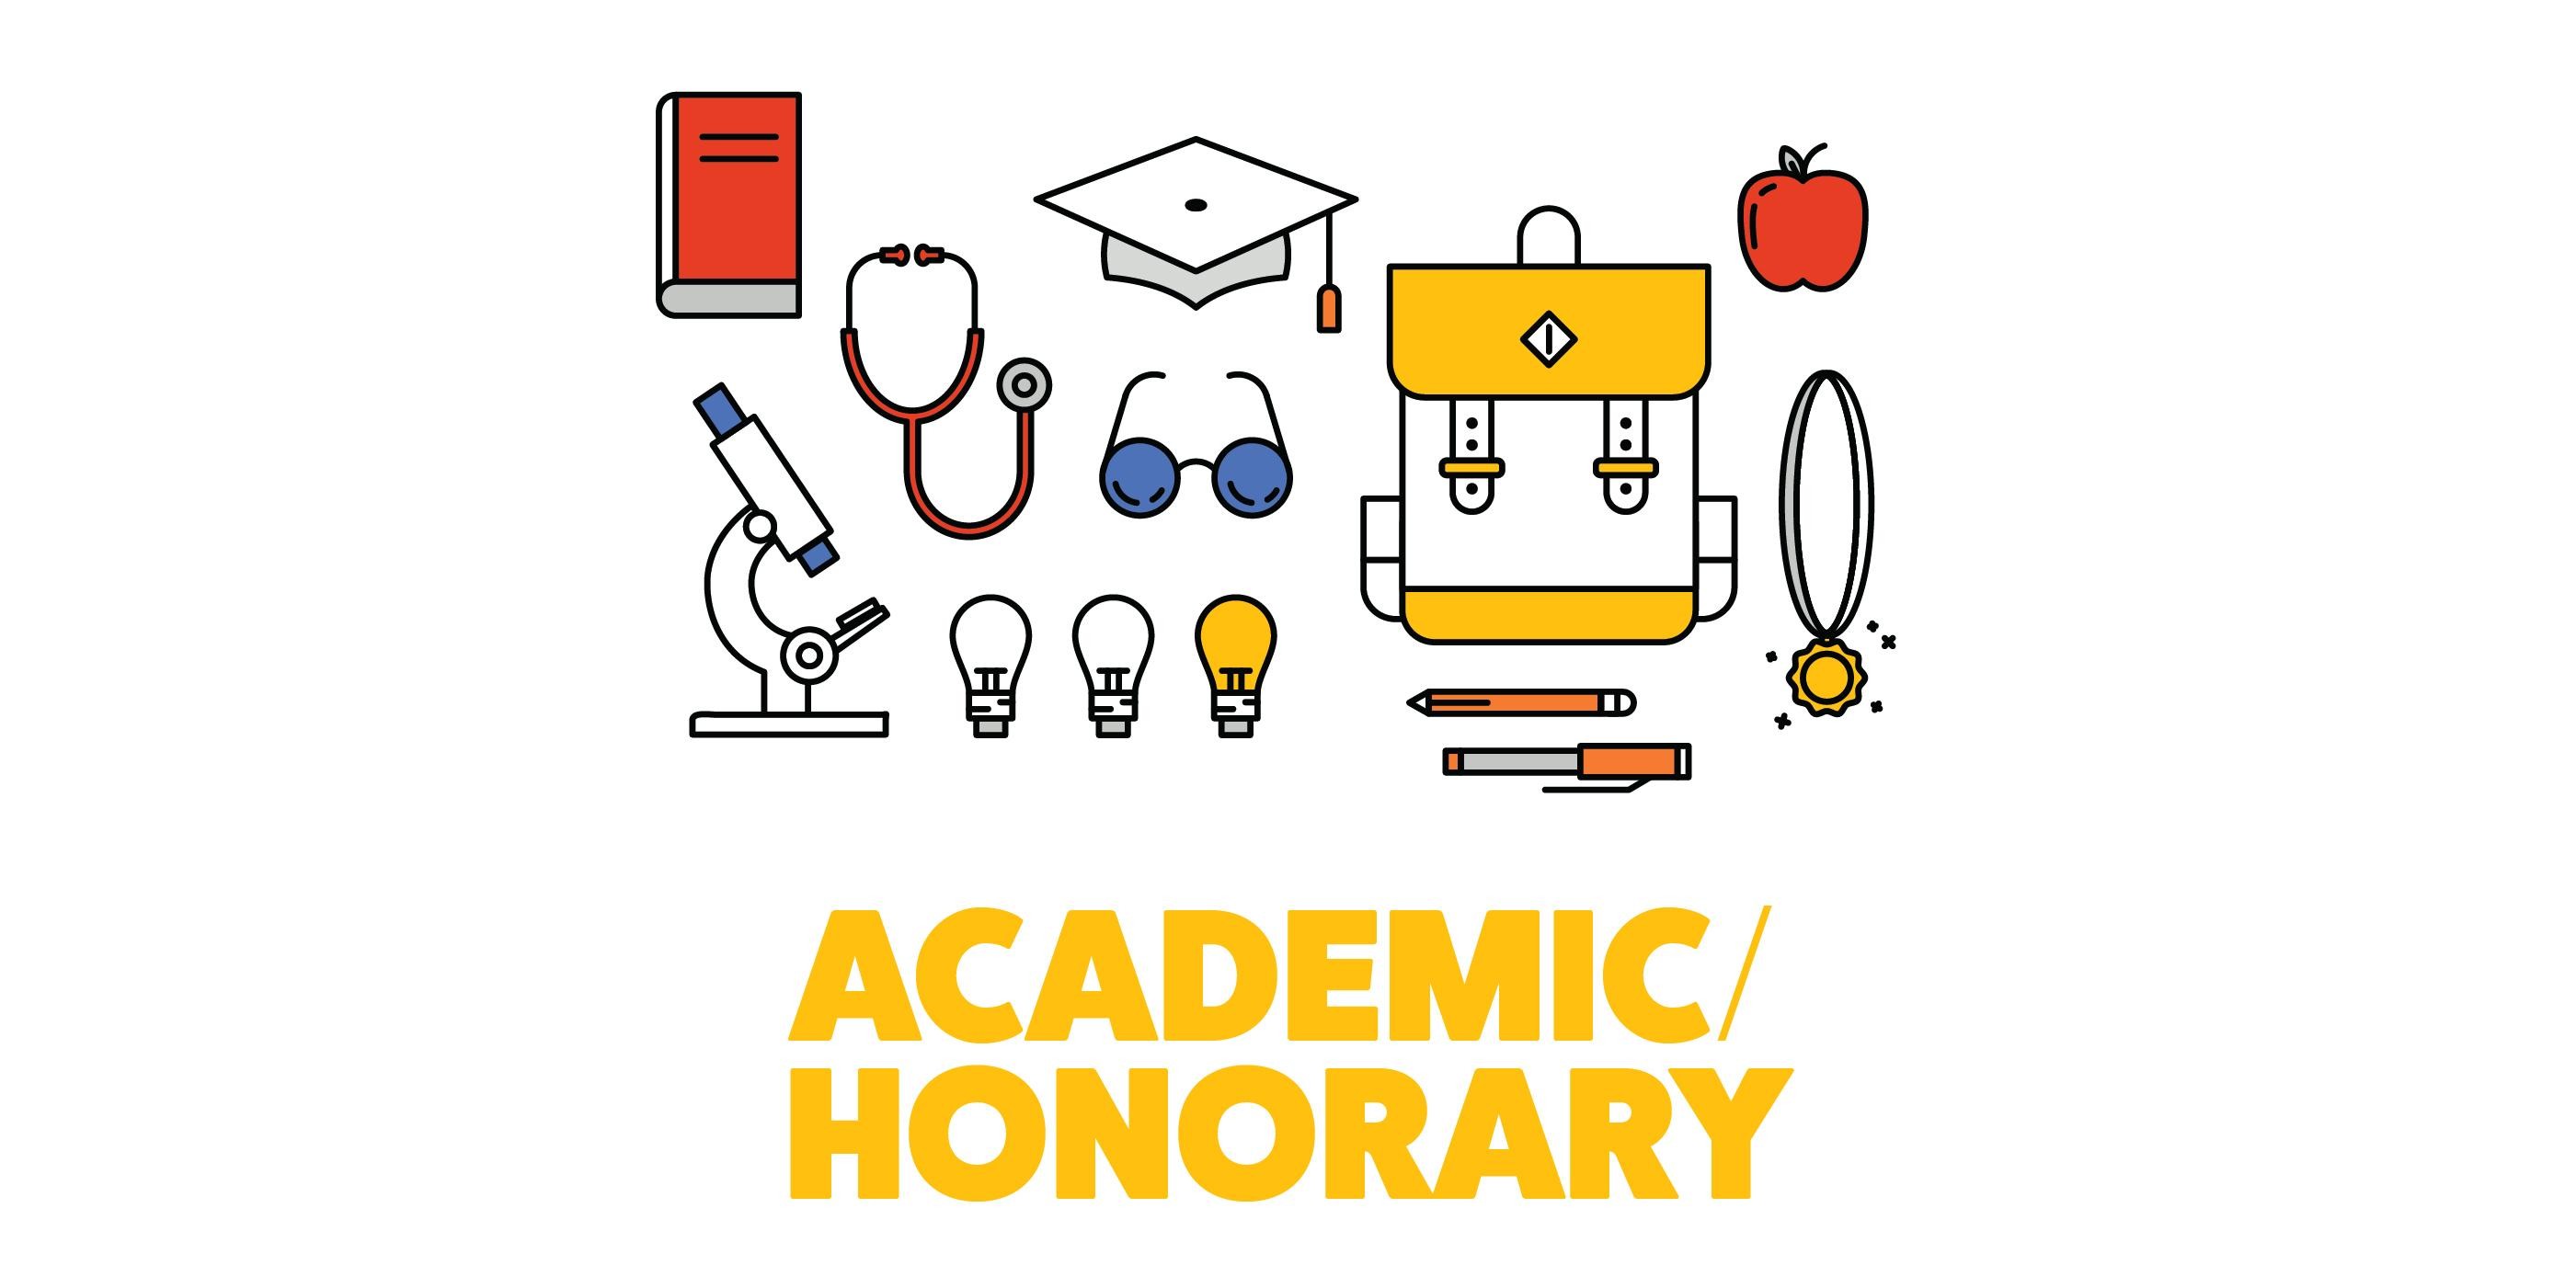 Academic/Honorary